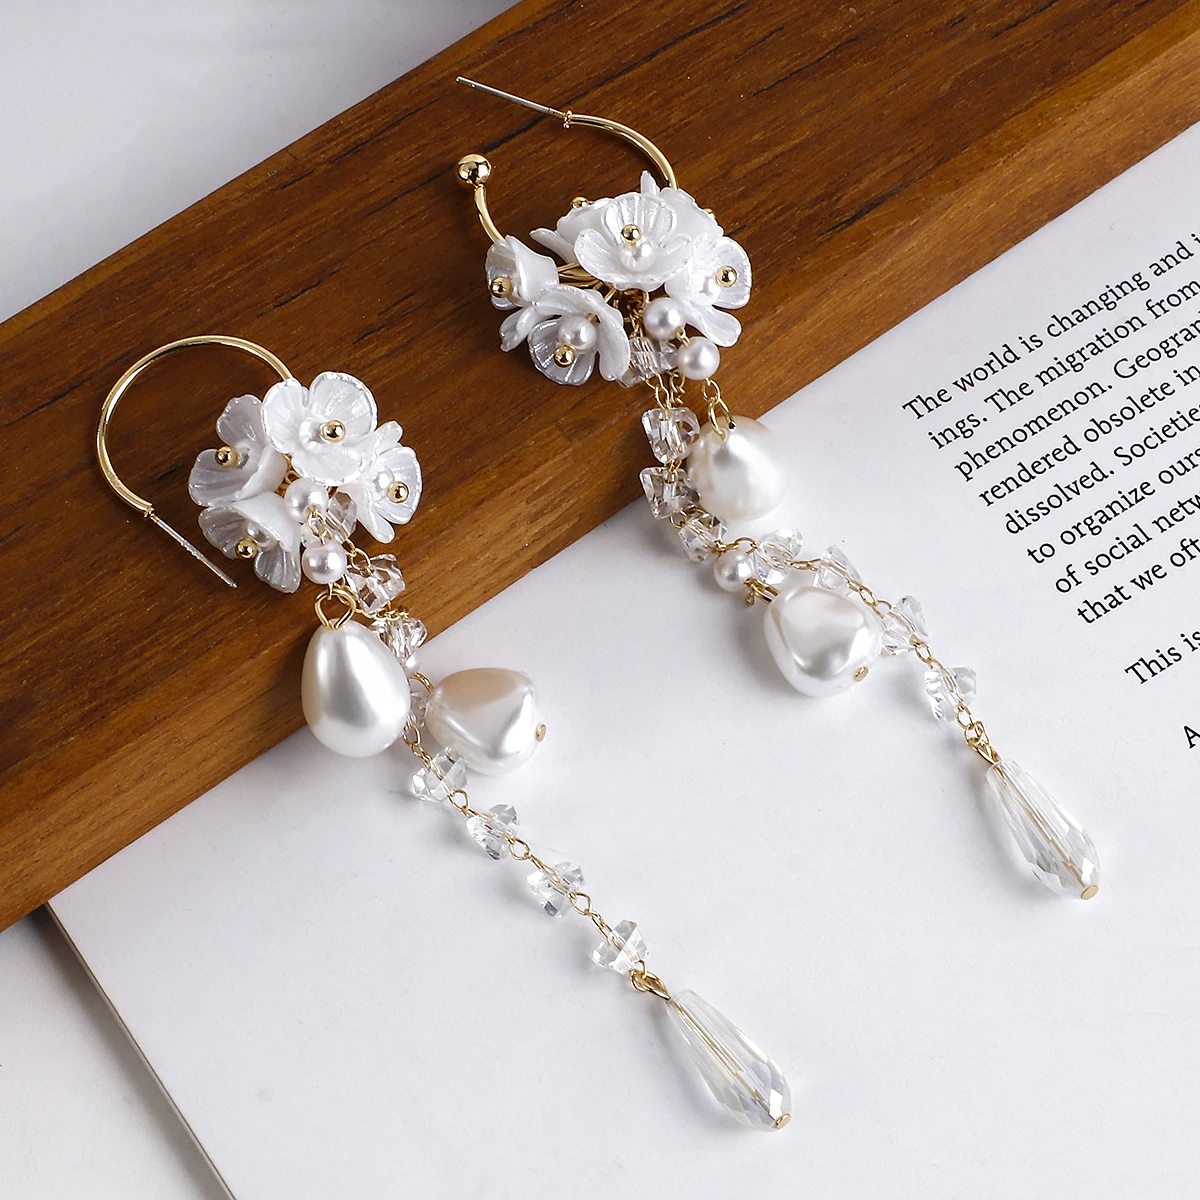 Lifefontier Fashion Long Tassel Simulated Pearl Drop Earrings Big Crystal Bead Flower Petal Earrings for Women Wedding Jewelry